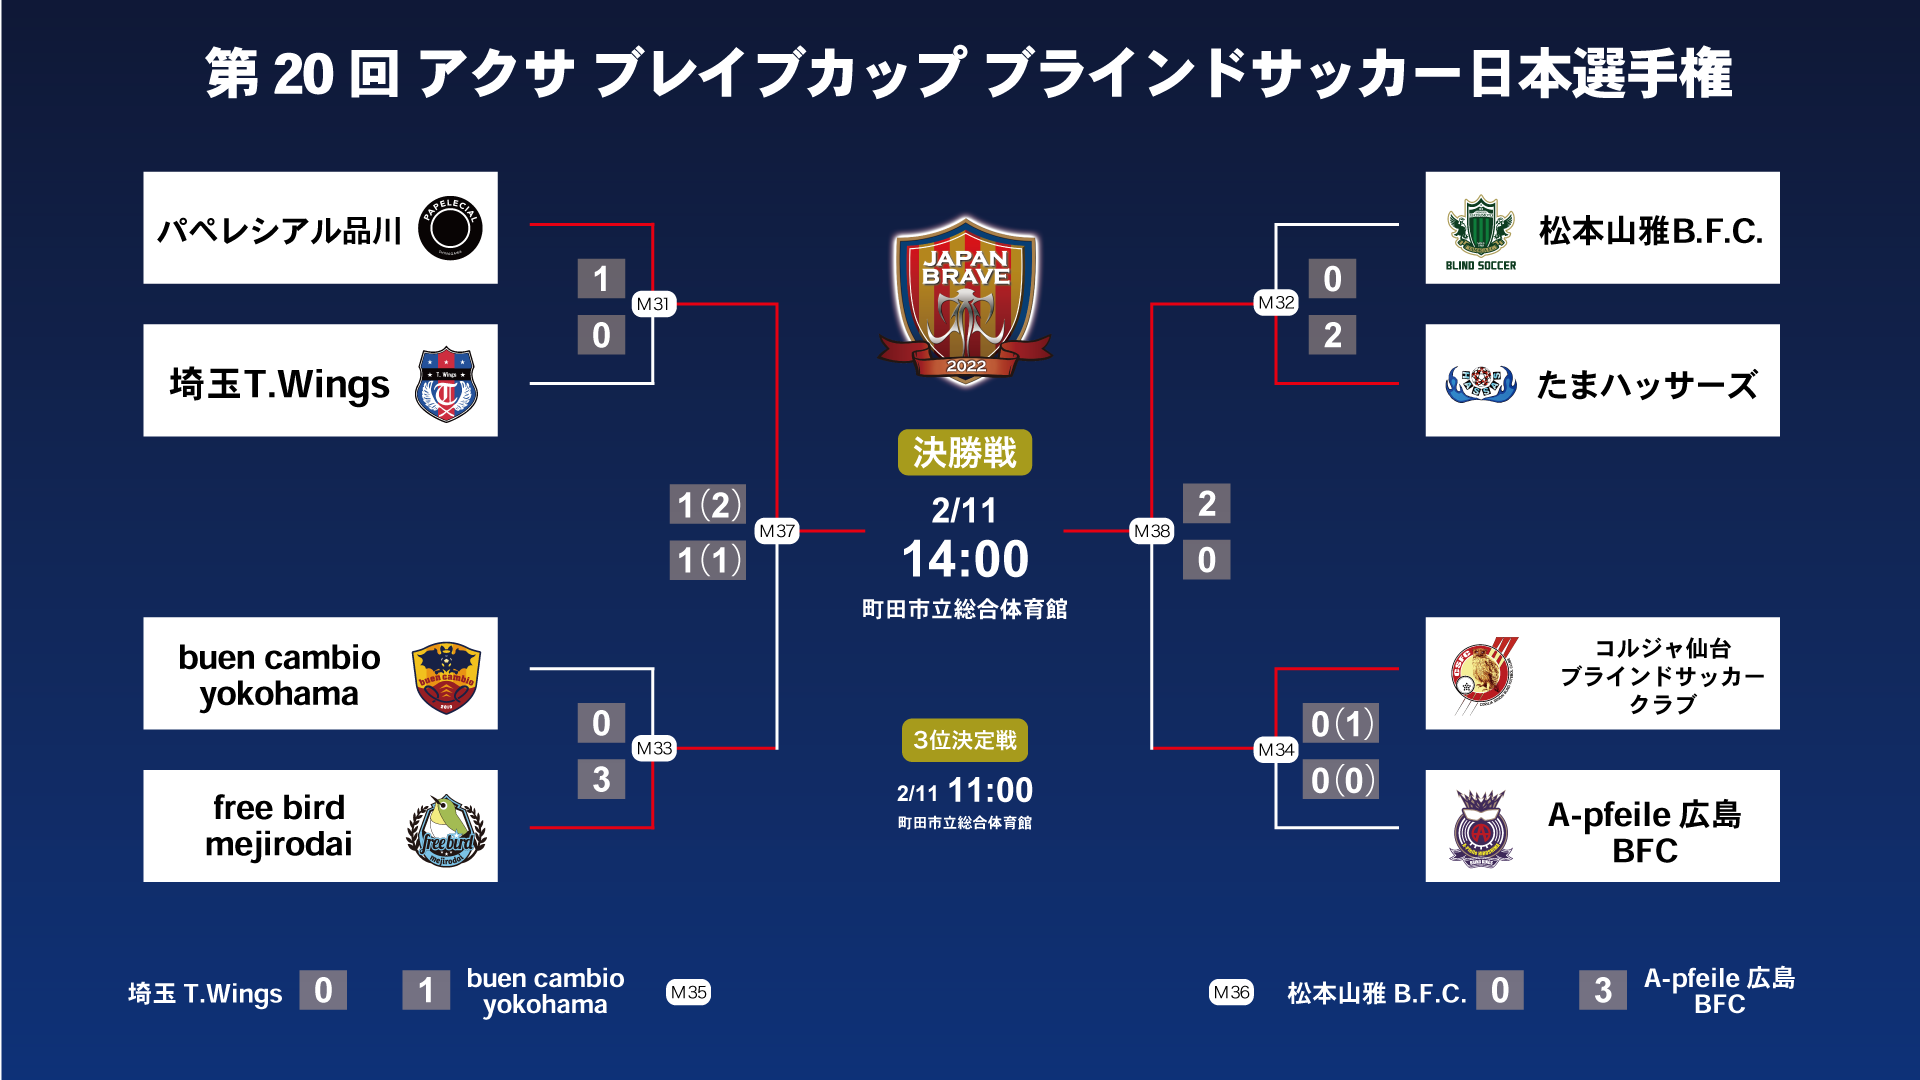 第20回 アクサ ブレイブカップ ブラインドサッカー日本選手権 トーナメント表